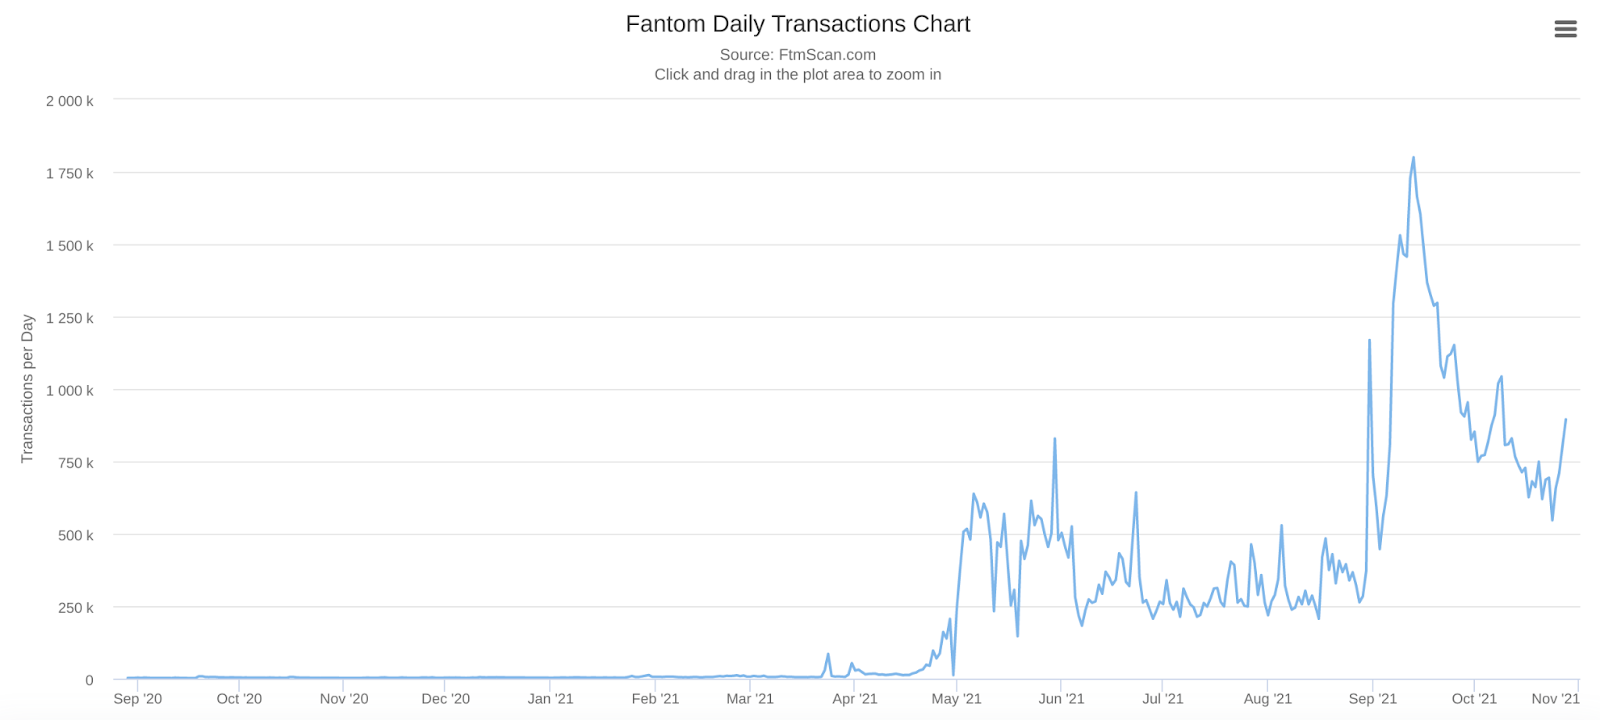 Évolution du nombre de transactions quotidiennes sur Fantom